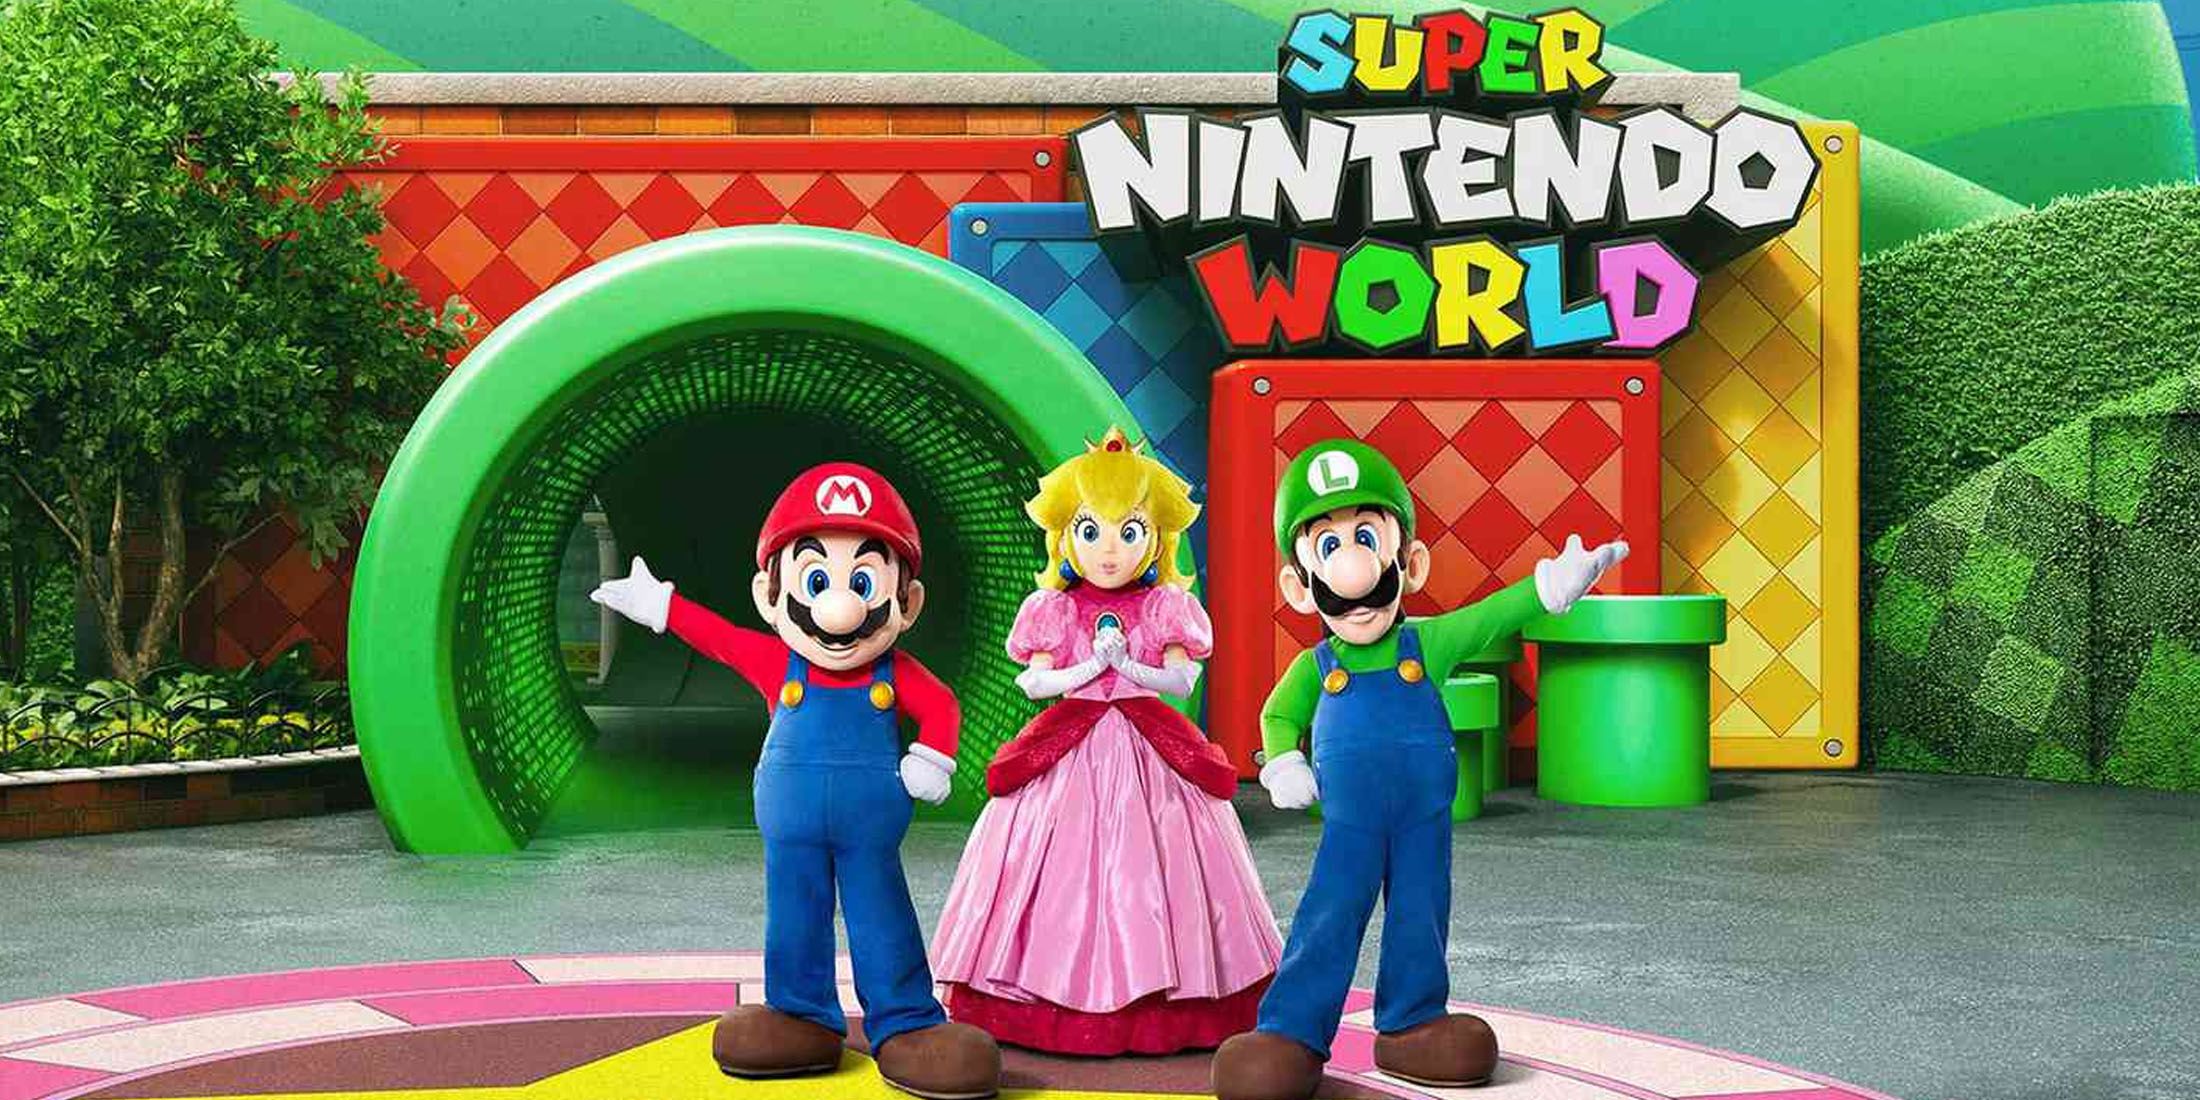 An image of Mario, Luigi, and Princess Peach greeting vistors at Super Nintendo World.